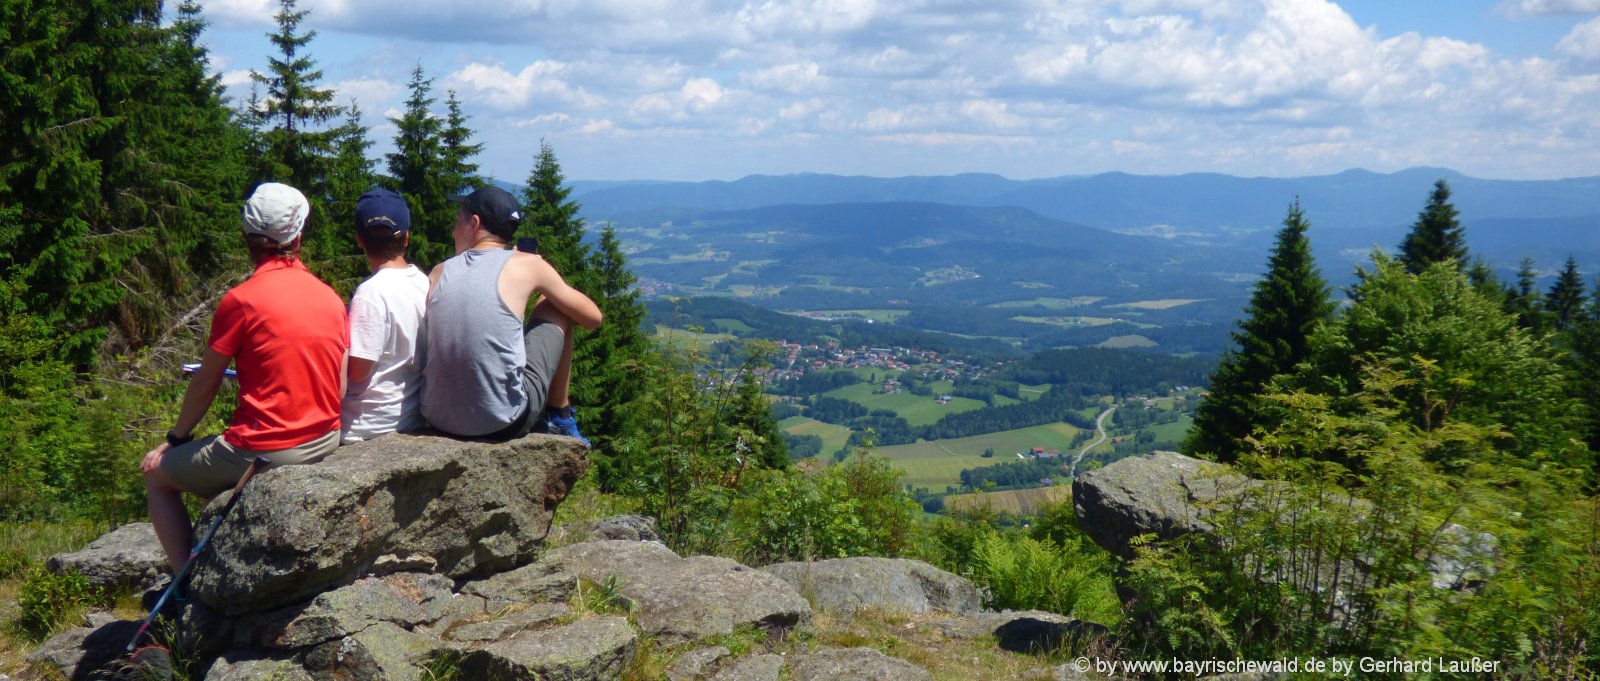 Bayerischer Wald Natururlaub in Bayern Natur erleben im Urlaub